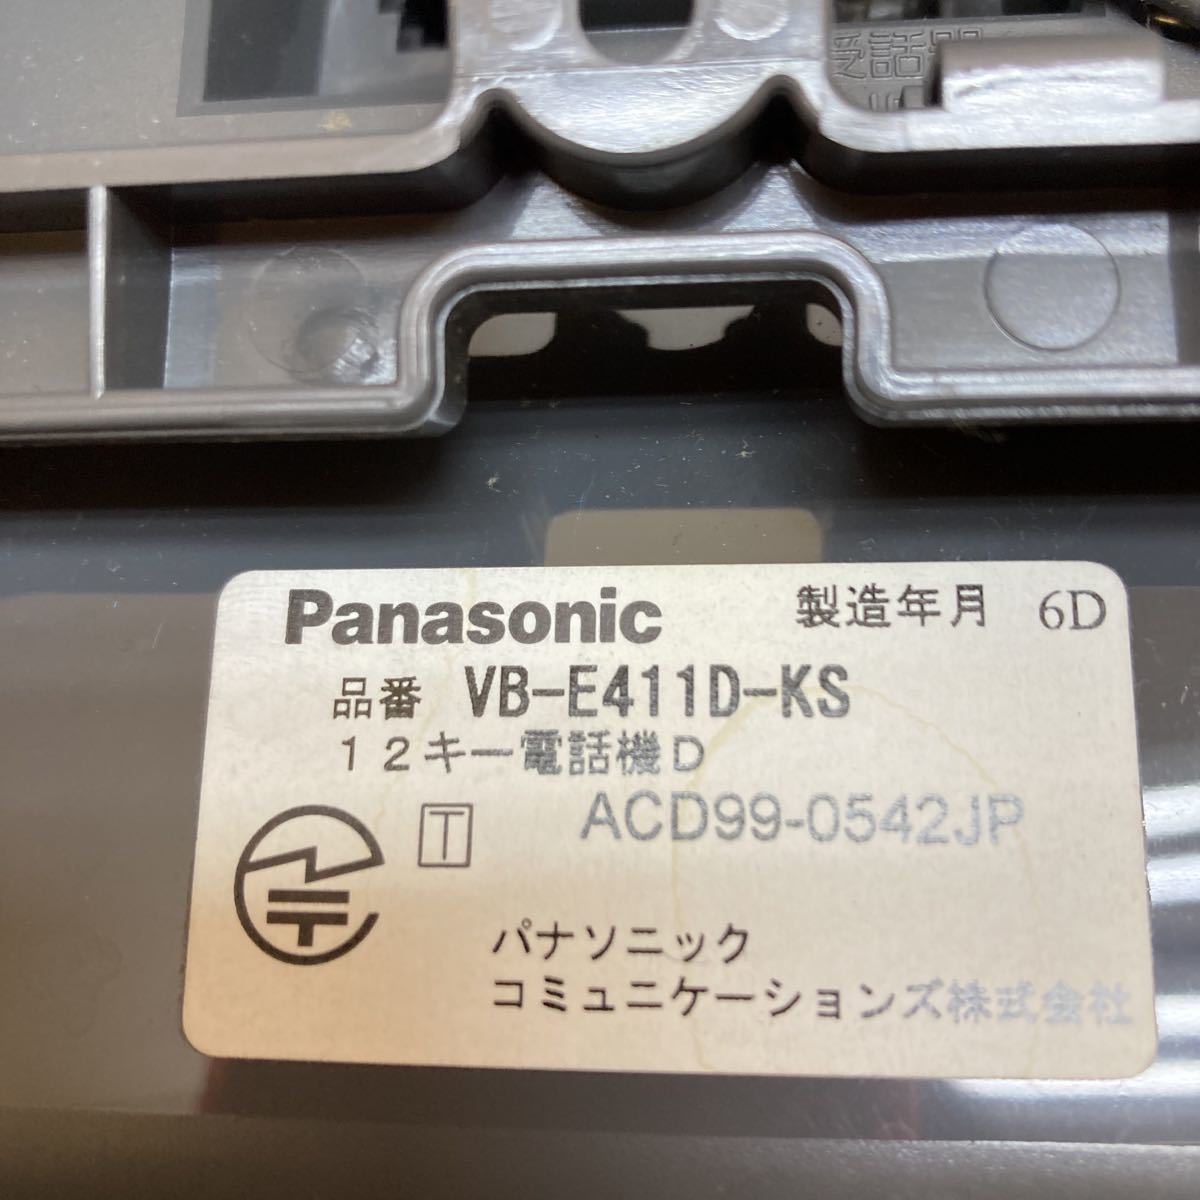 WM4912 Panasonic 6 key aksoru business ho n[VB-E211N-KS]×4 pcs |12 key VB-E411D-KS× 1 pcs summarize operation not yet verification present condition goods 01117